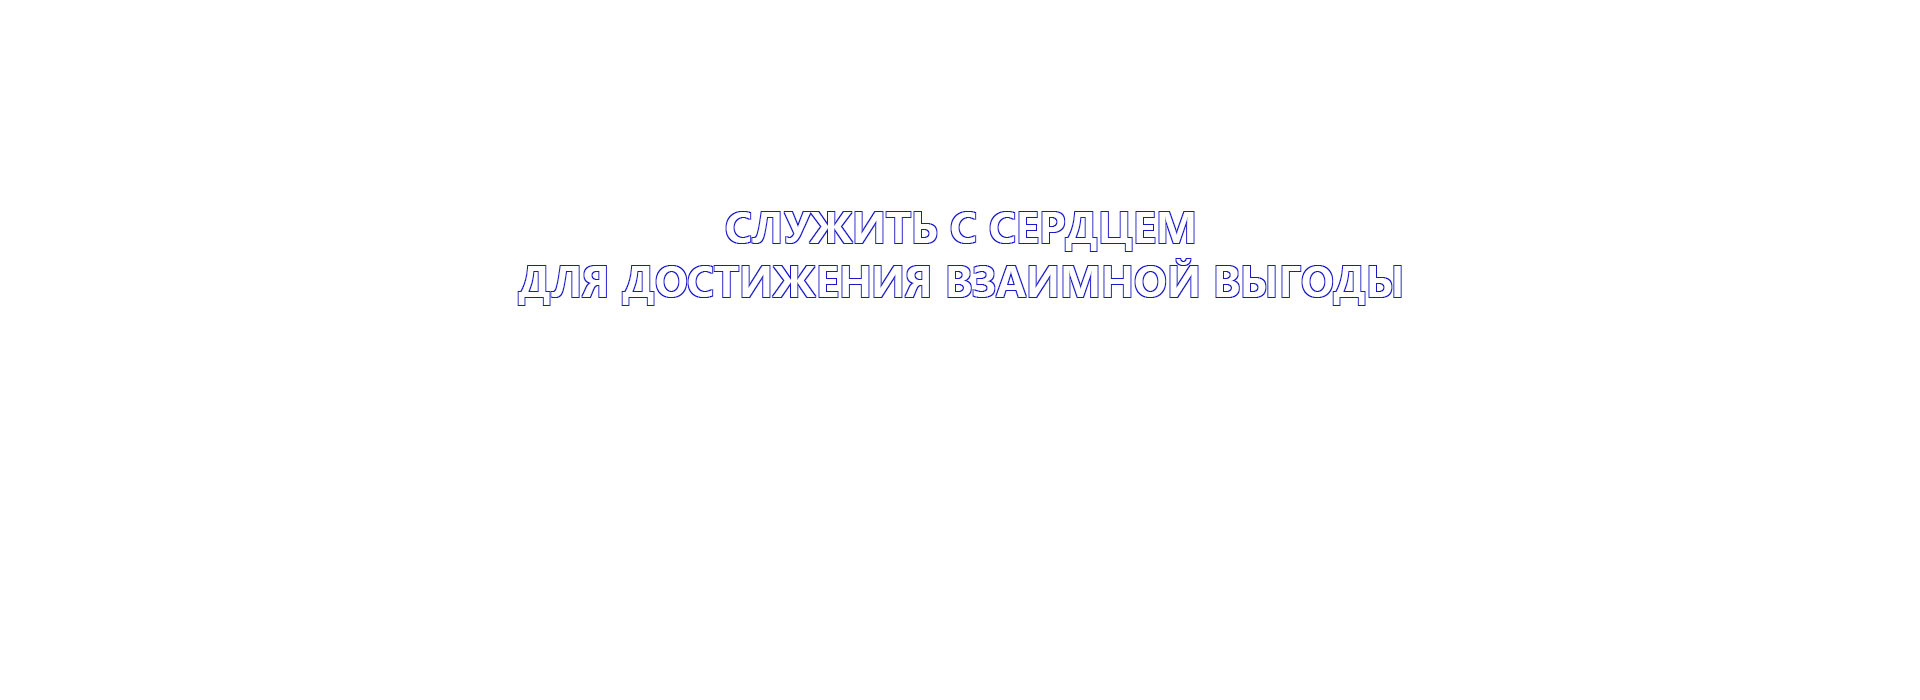 banner1-2-俄